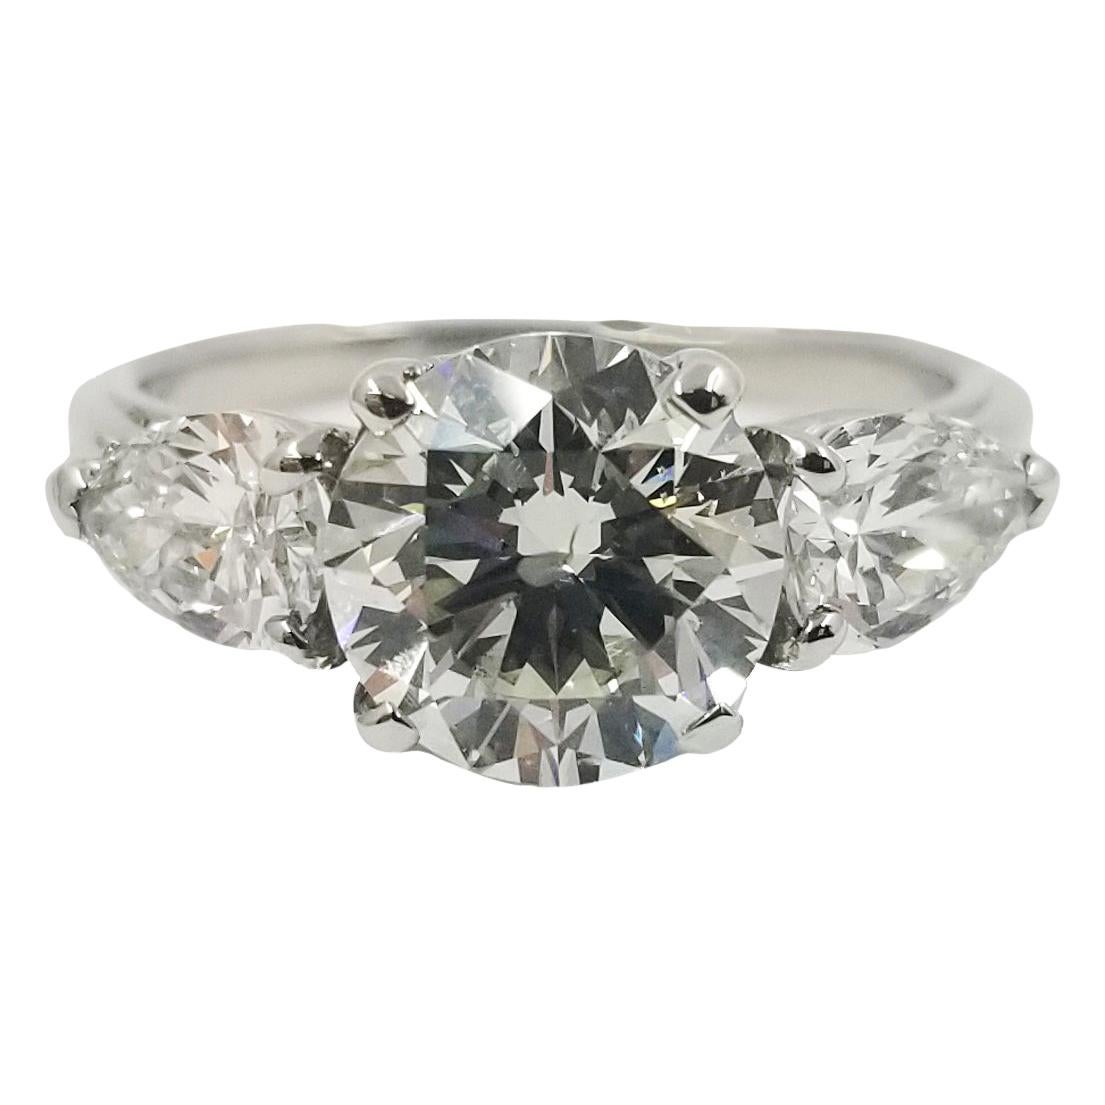 2.05 Carat Round Brilliant Diamond in Platinum Engagement Ring